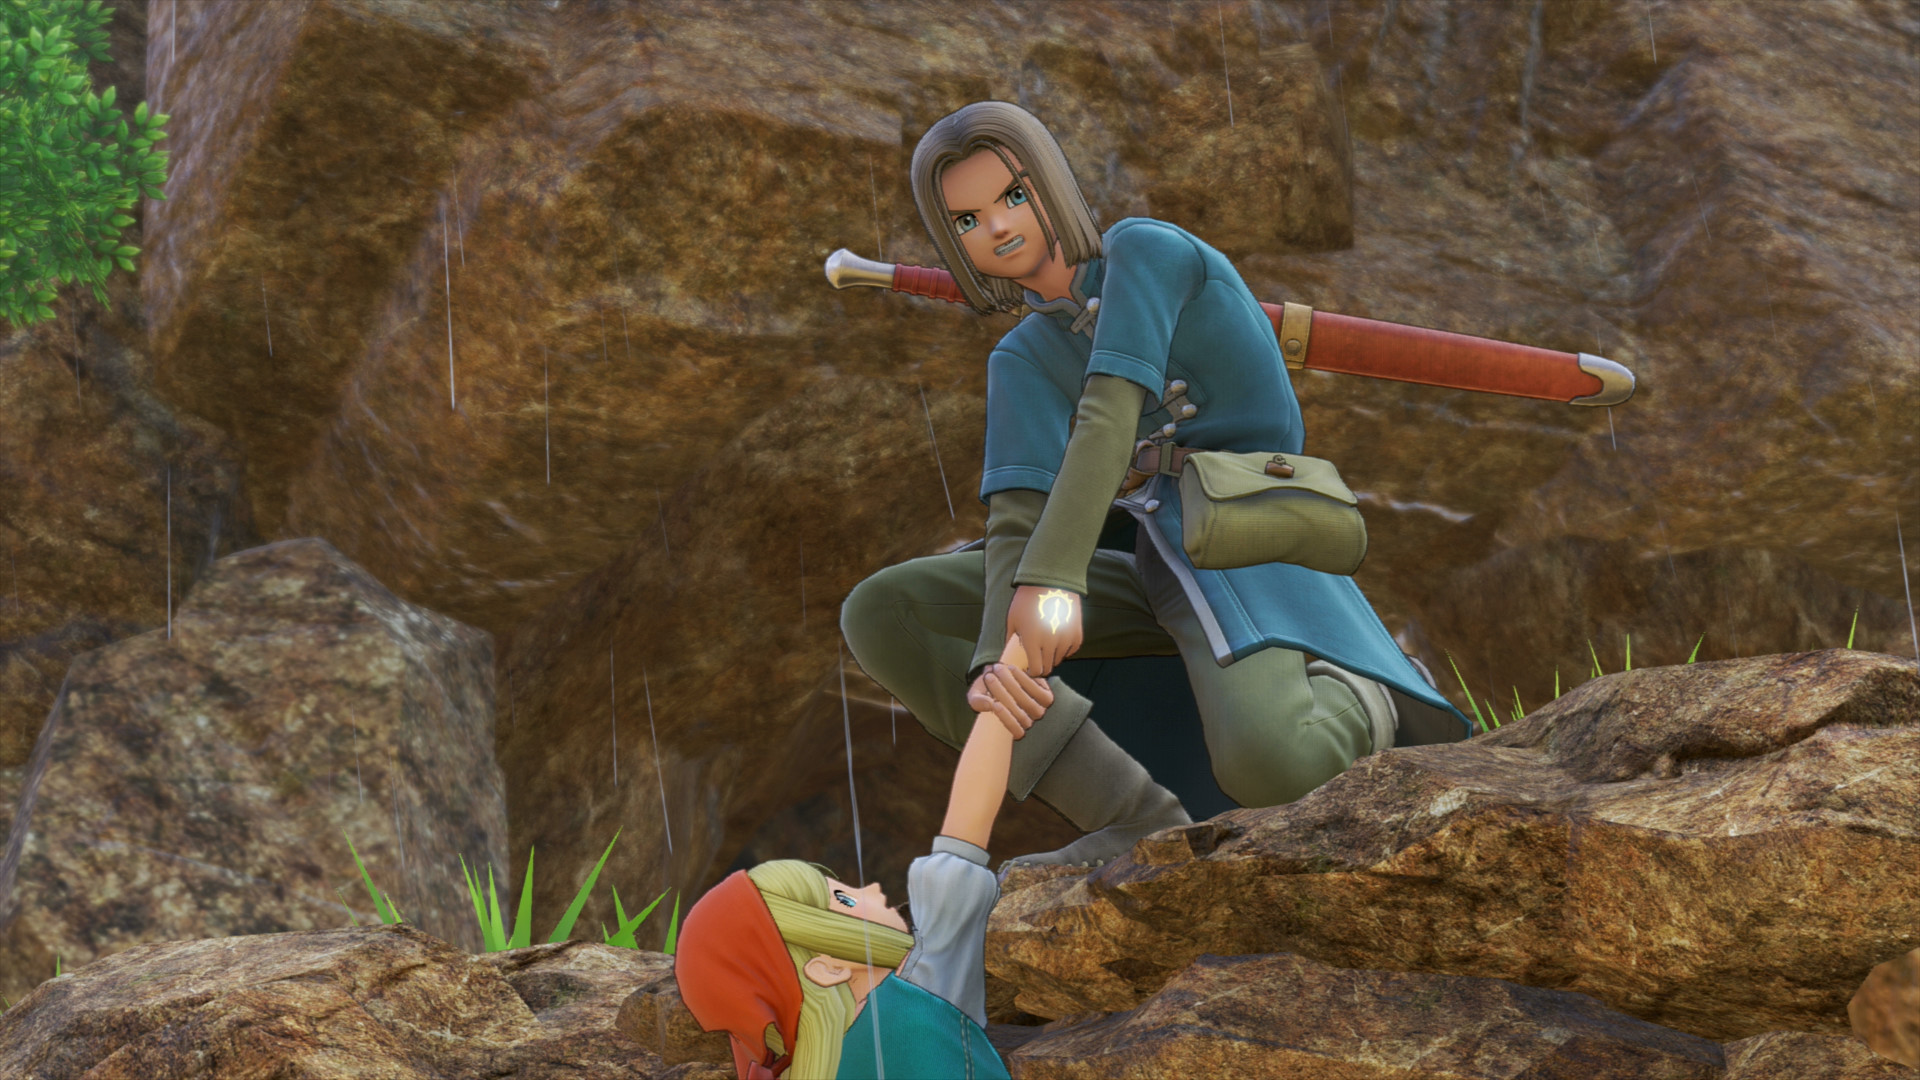 Meilleurs jeux d'anime: Dragon Quest XI. L'image montre un garçon tirant une fille sur un rebord rocheux